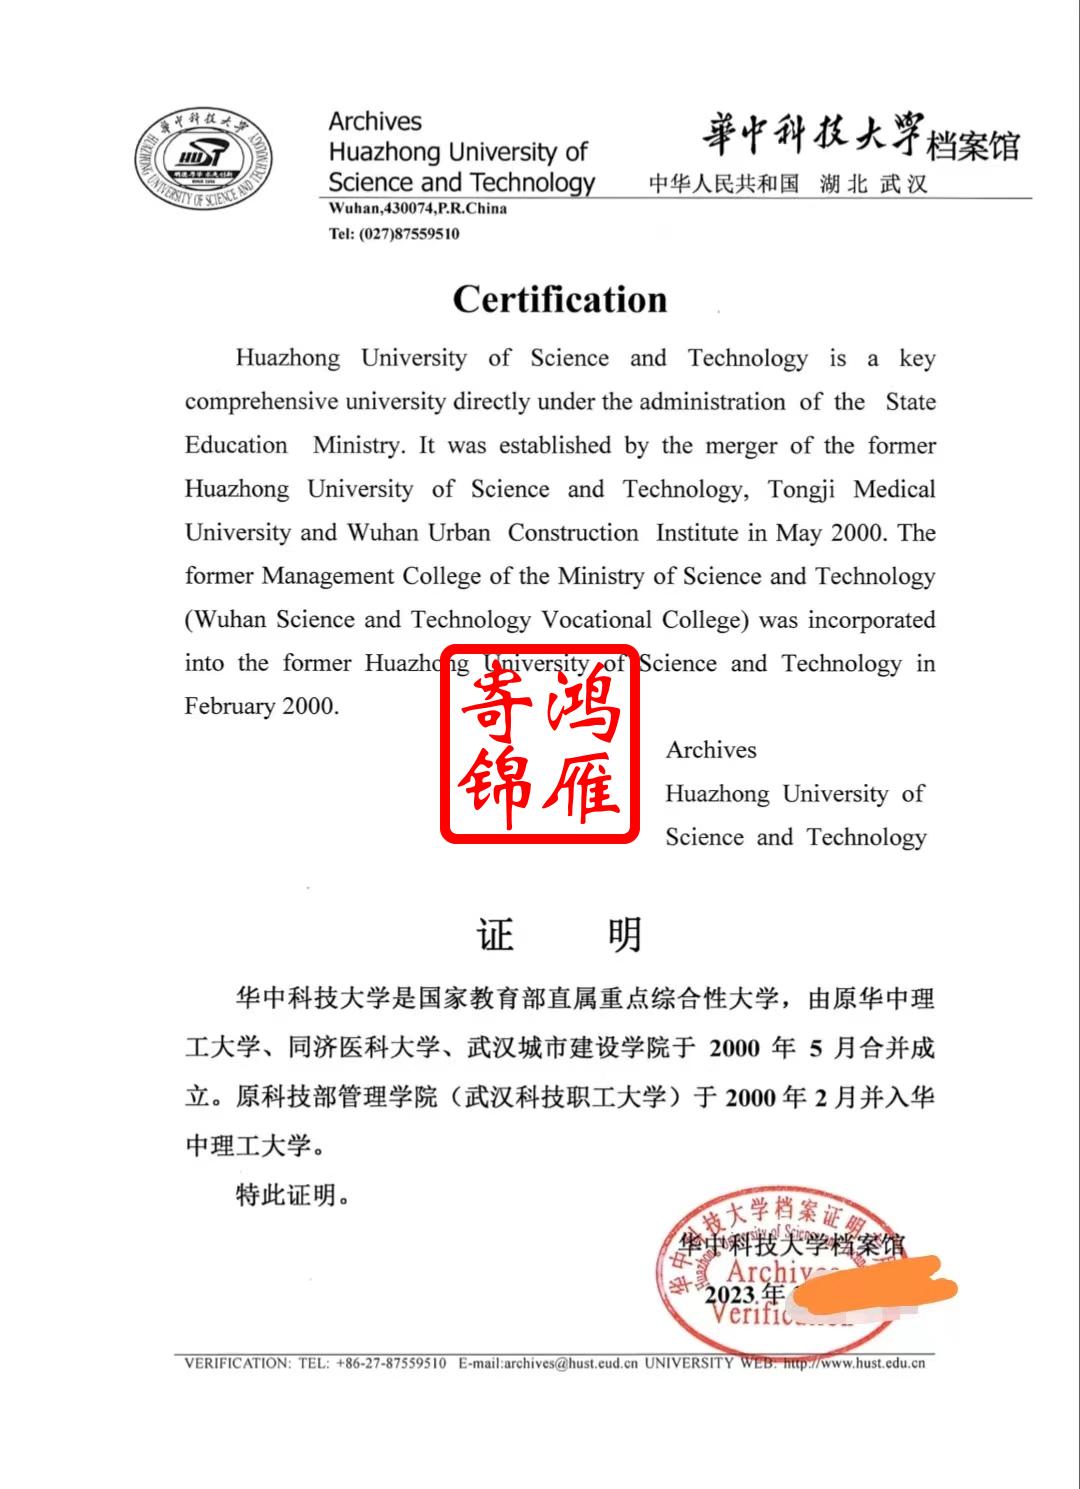 华中科技大学中英文更名证明打印案例.jpg